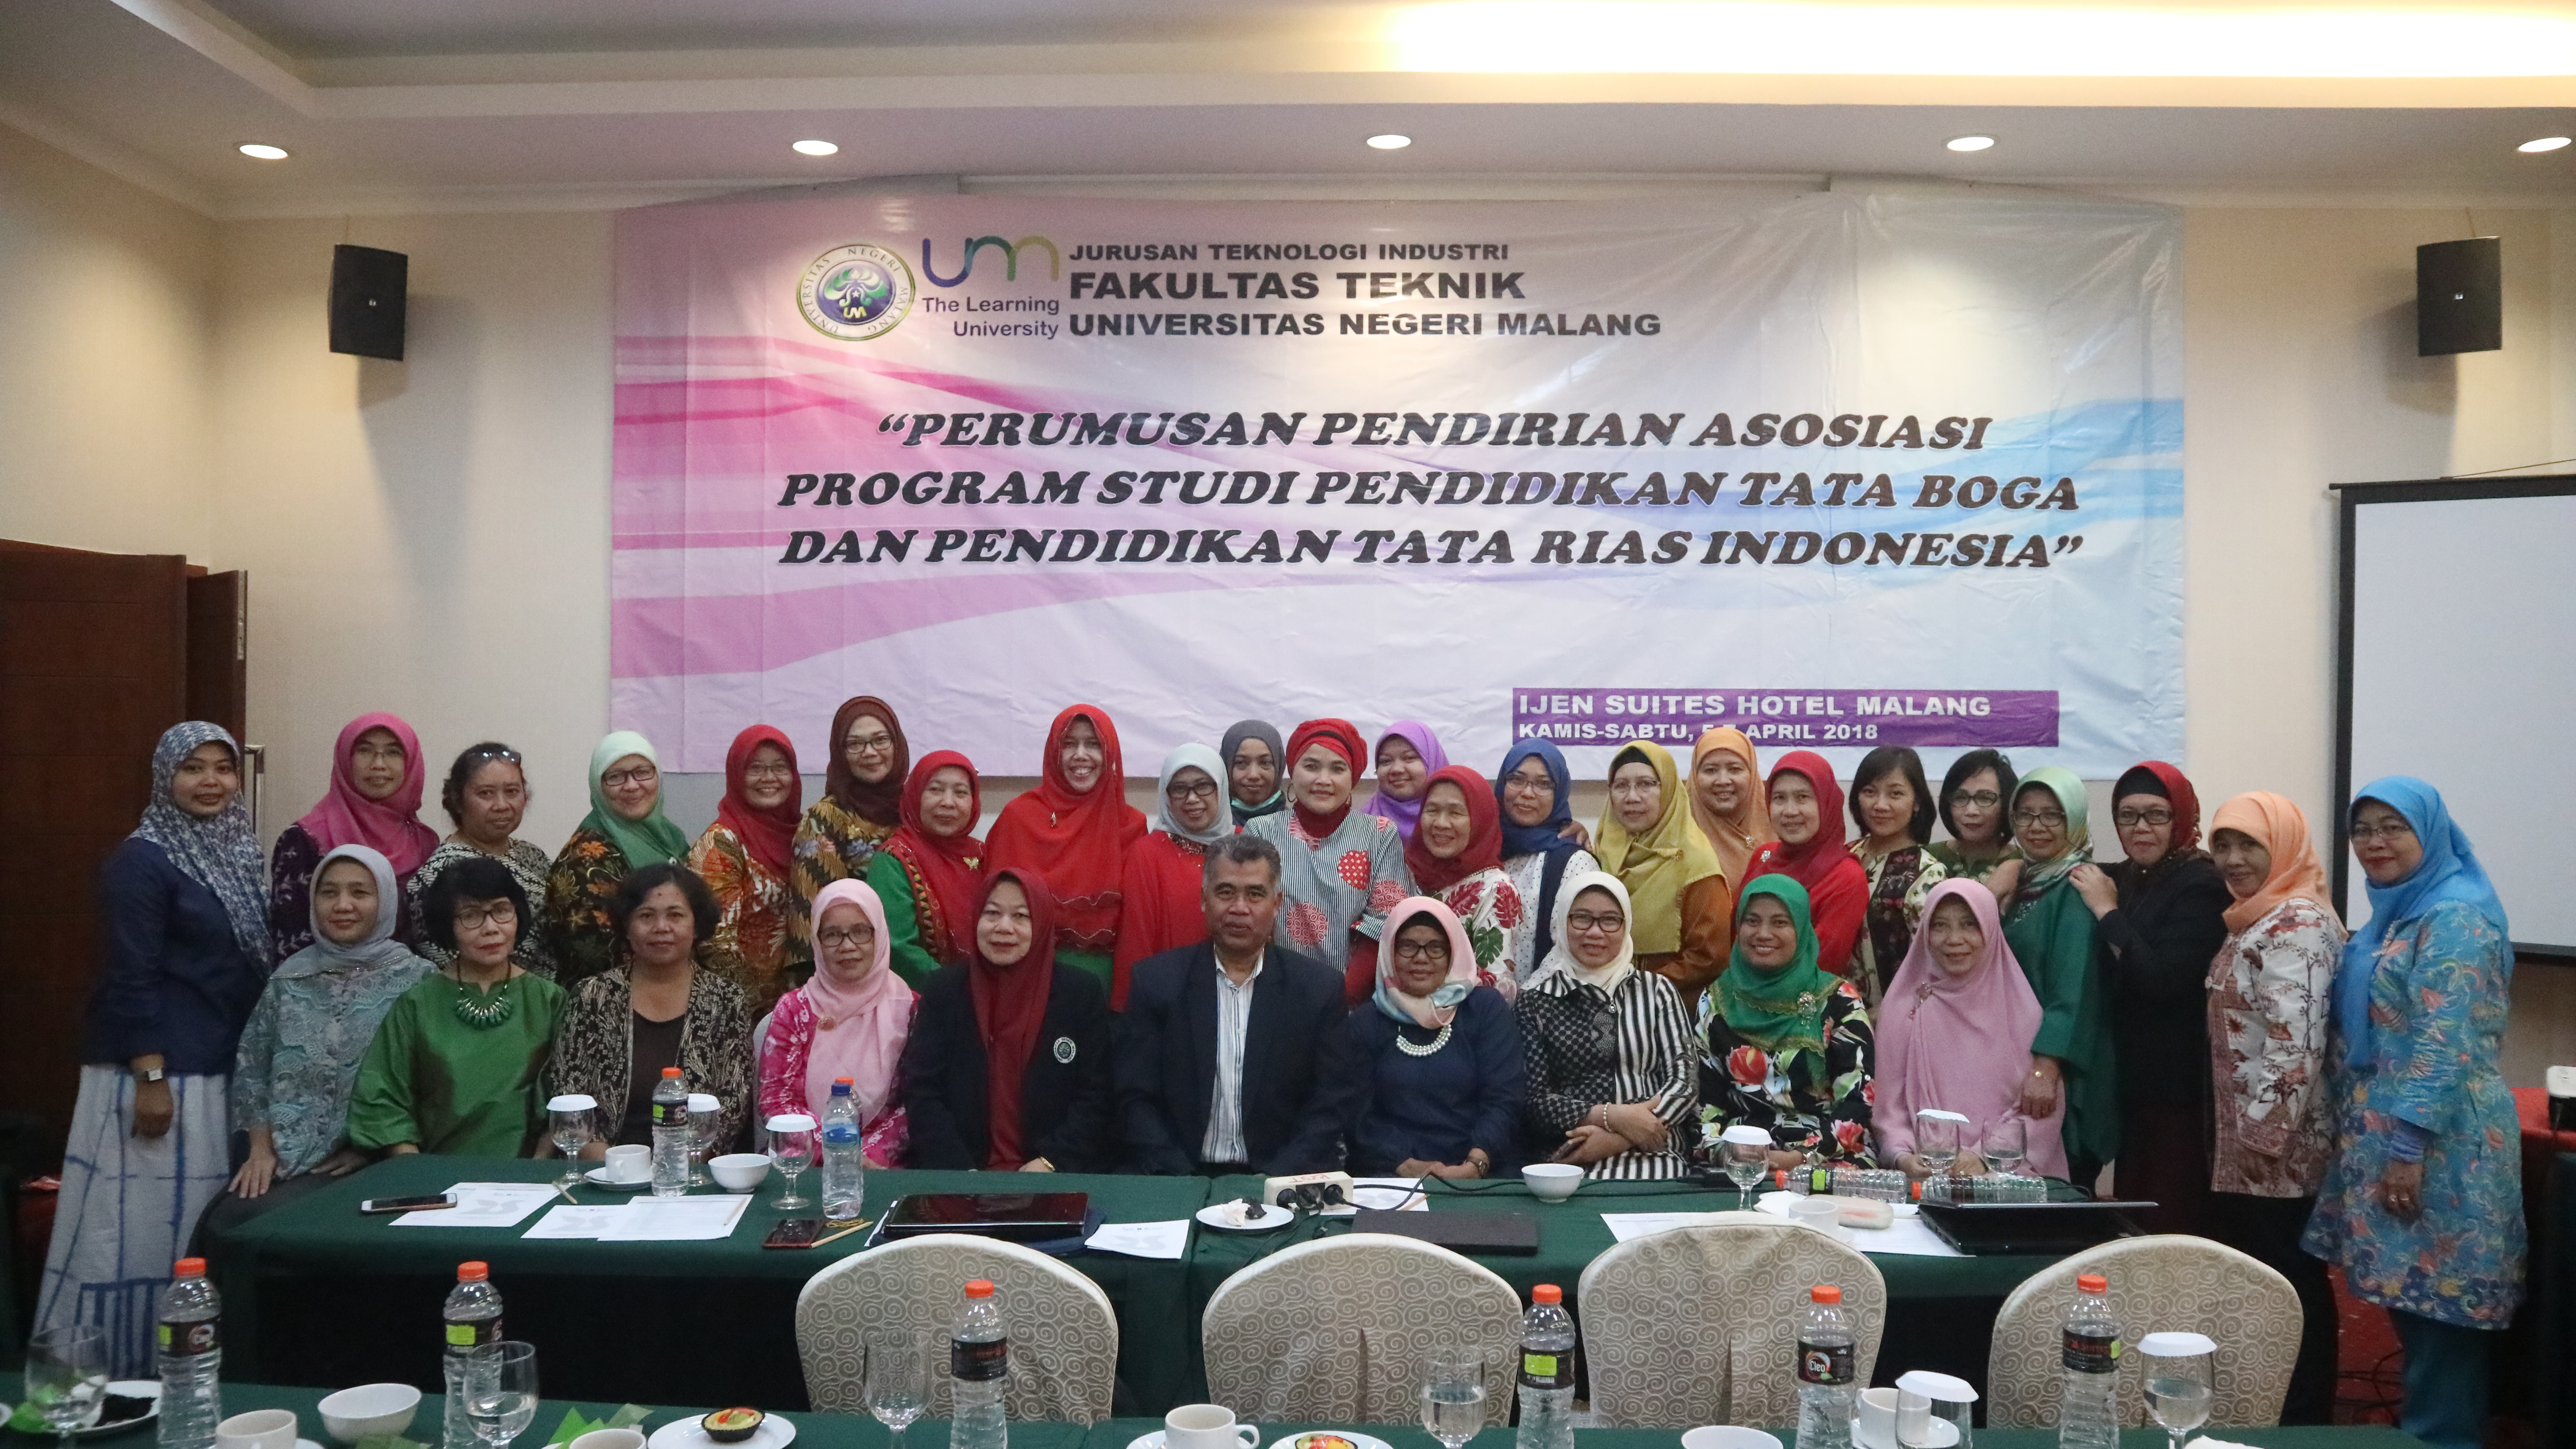 Pertemuan Program Studi Pendidikan Tata Boga dan Pendidikan Tata Rias Indonesia